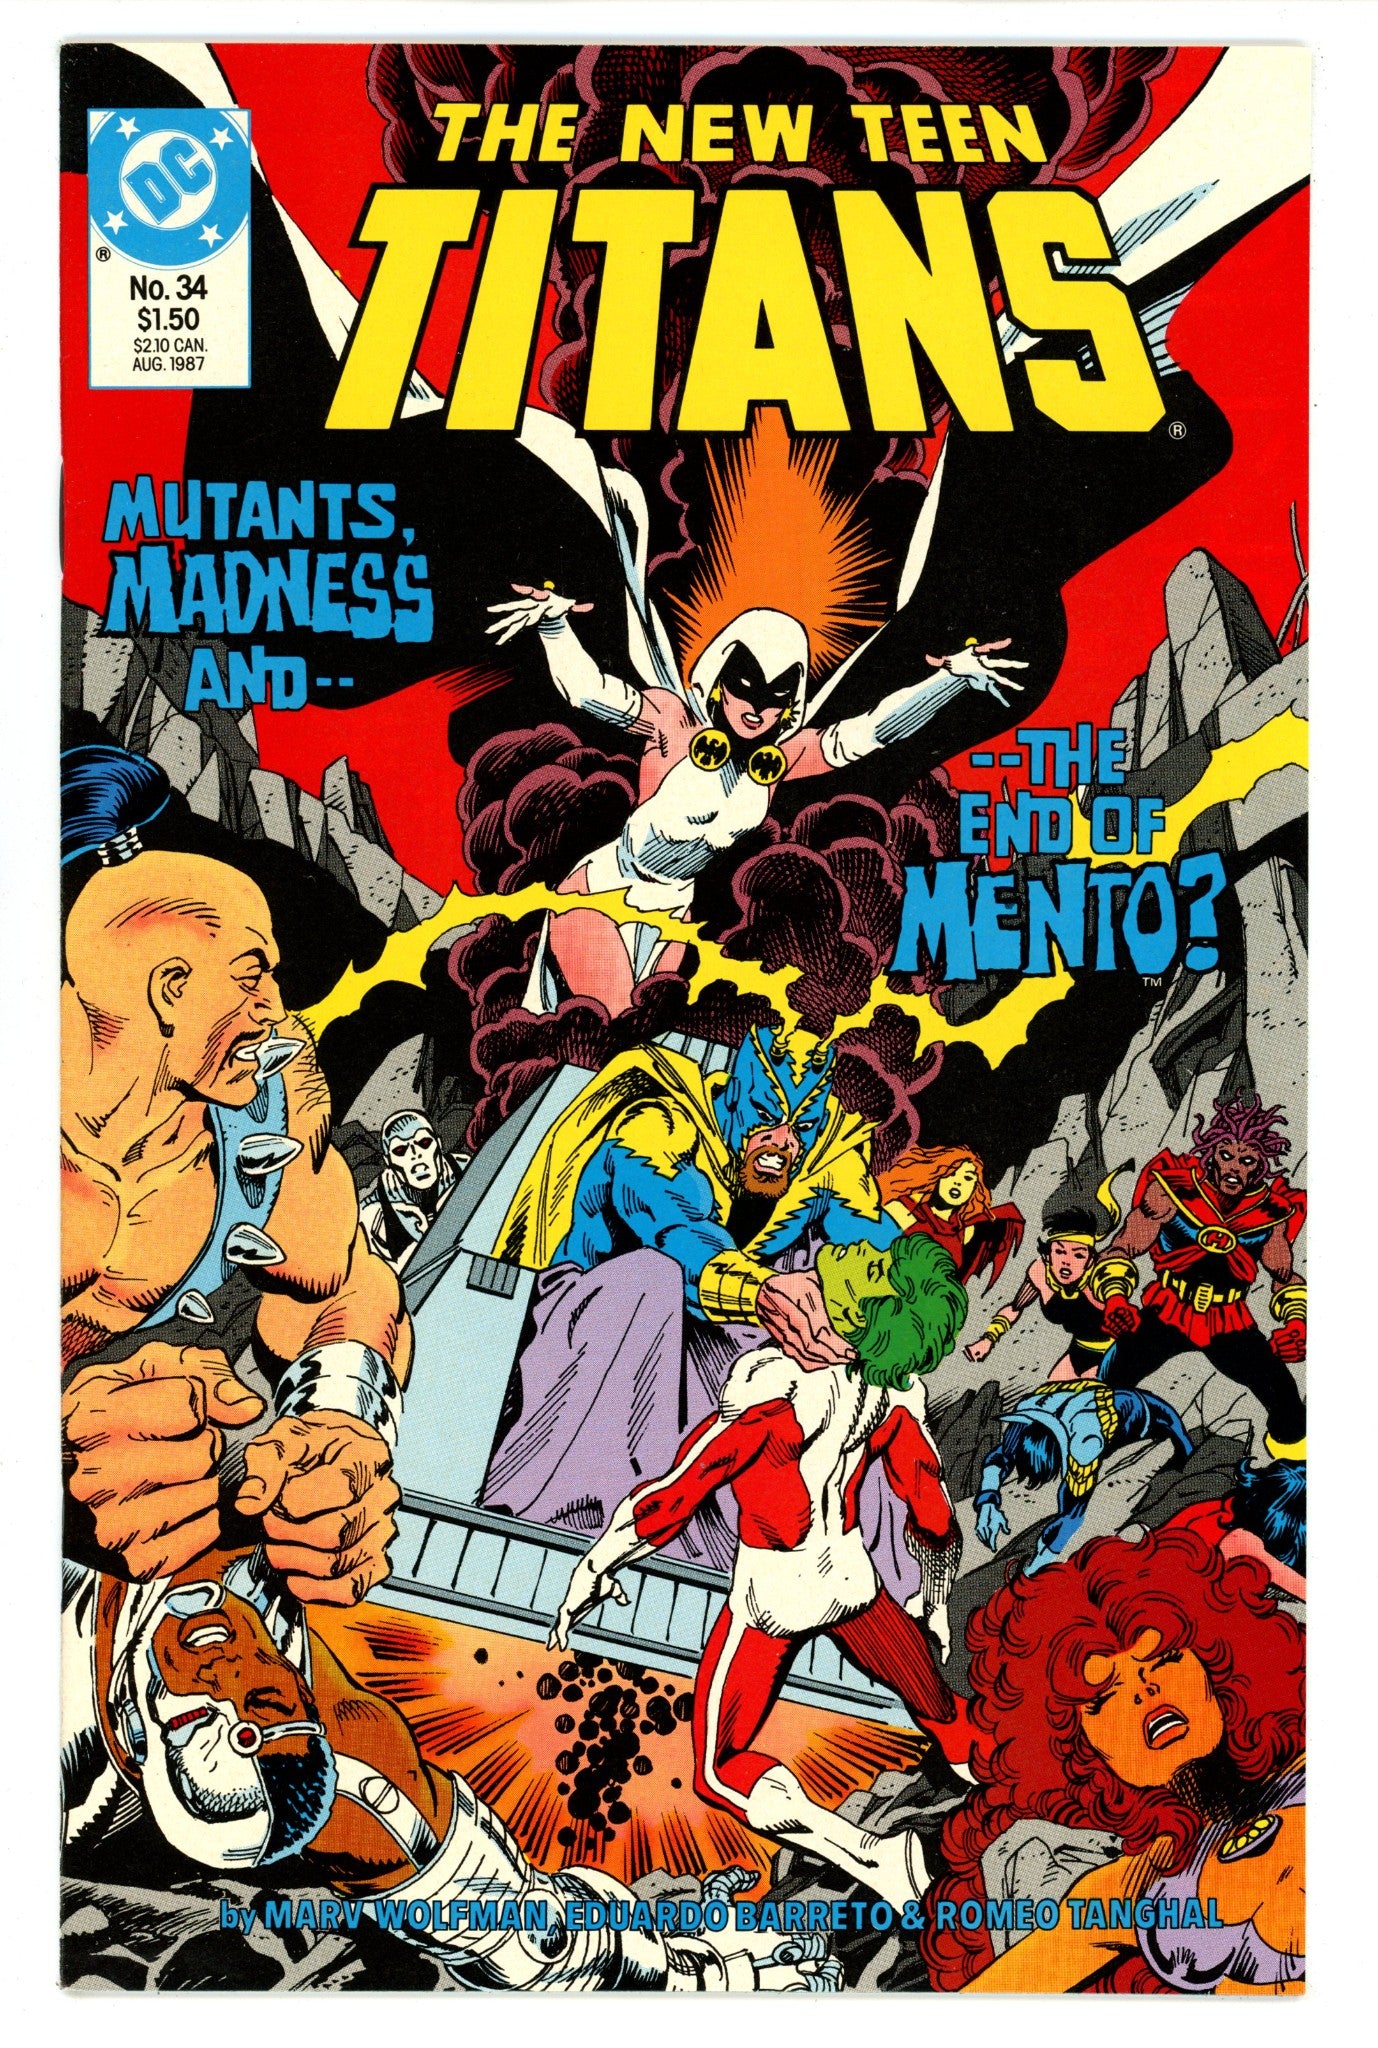 The New Teen Titans Vol 2 34 High Grade (1987) 